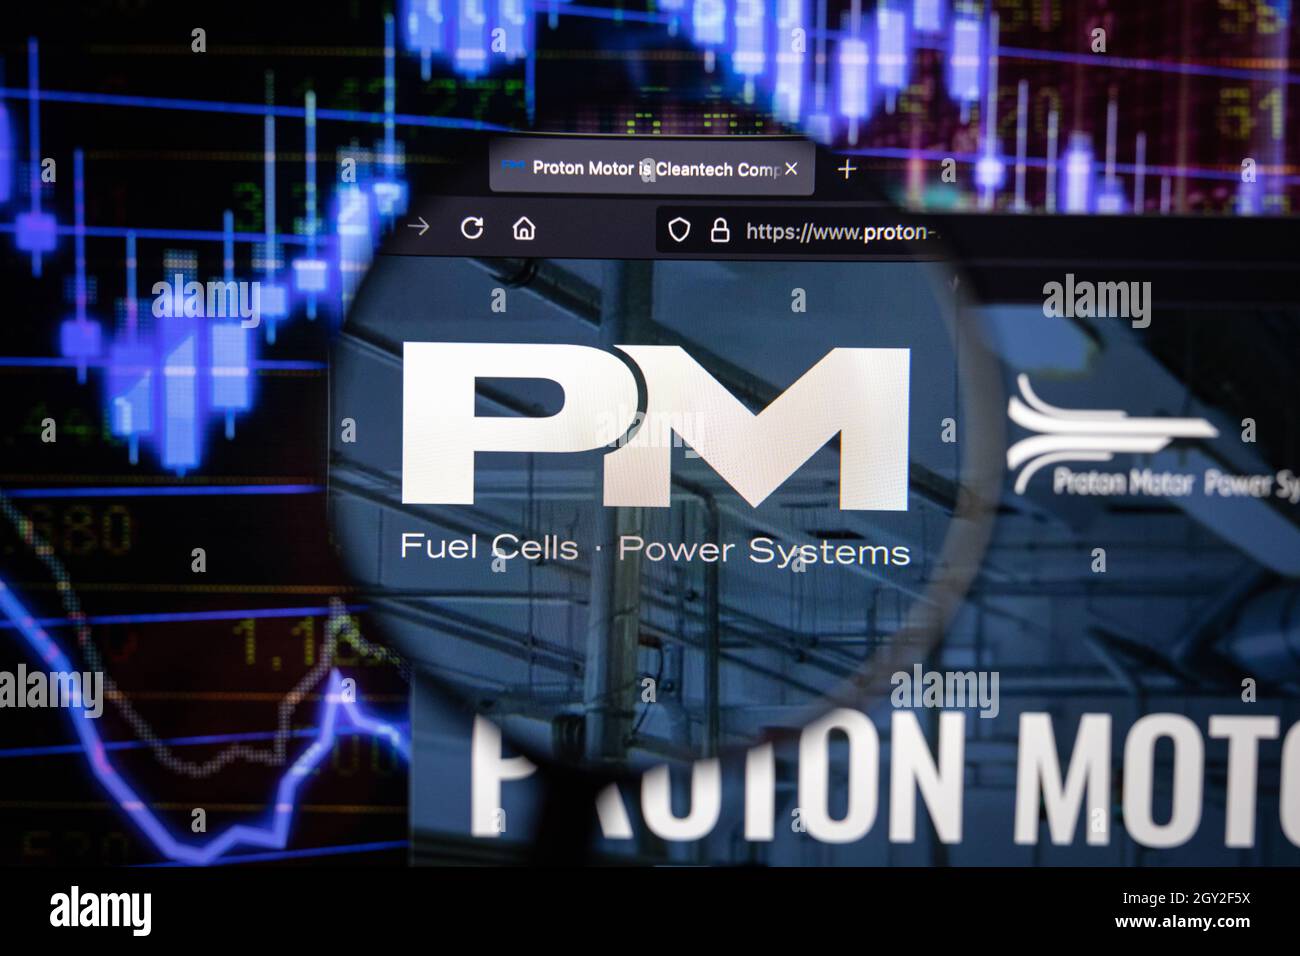 Proton Motor Fuel Cells Power Systems logo azienda su un sito web con blurry sviluppi del mercato azionario in background, visto su uno schermo del computer Foto Stock